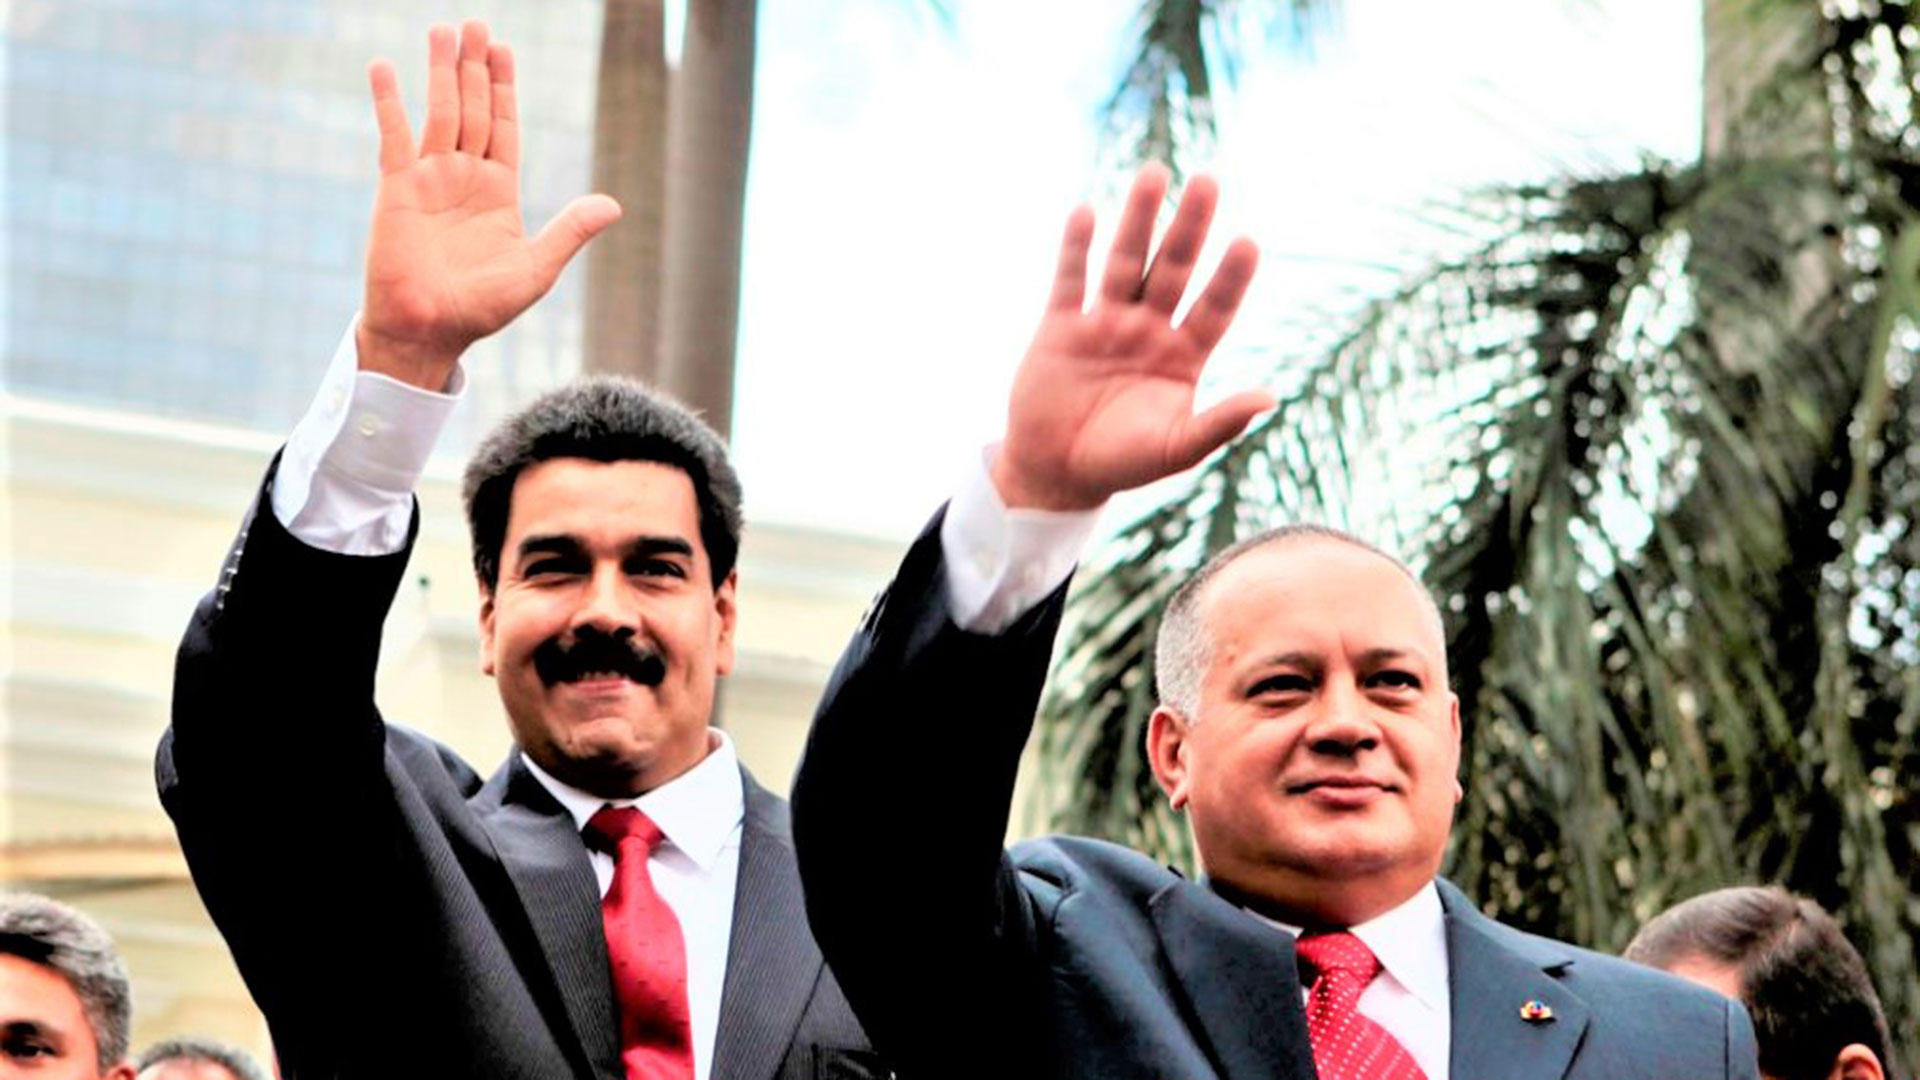 Los bandos rivales los lideran Nicolás Maduro y Diosdado Cabello